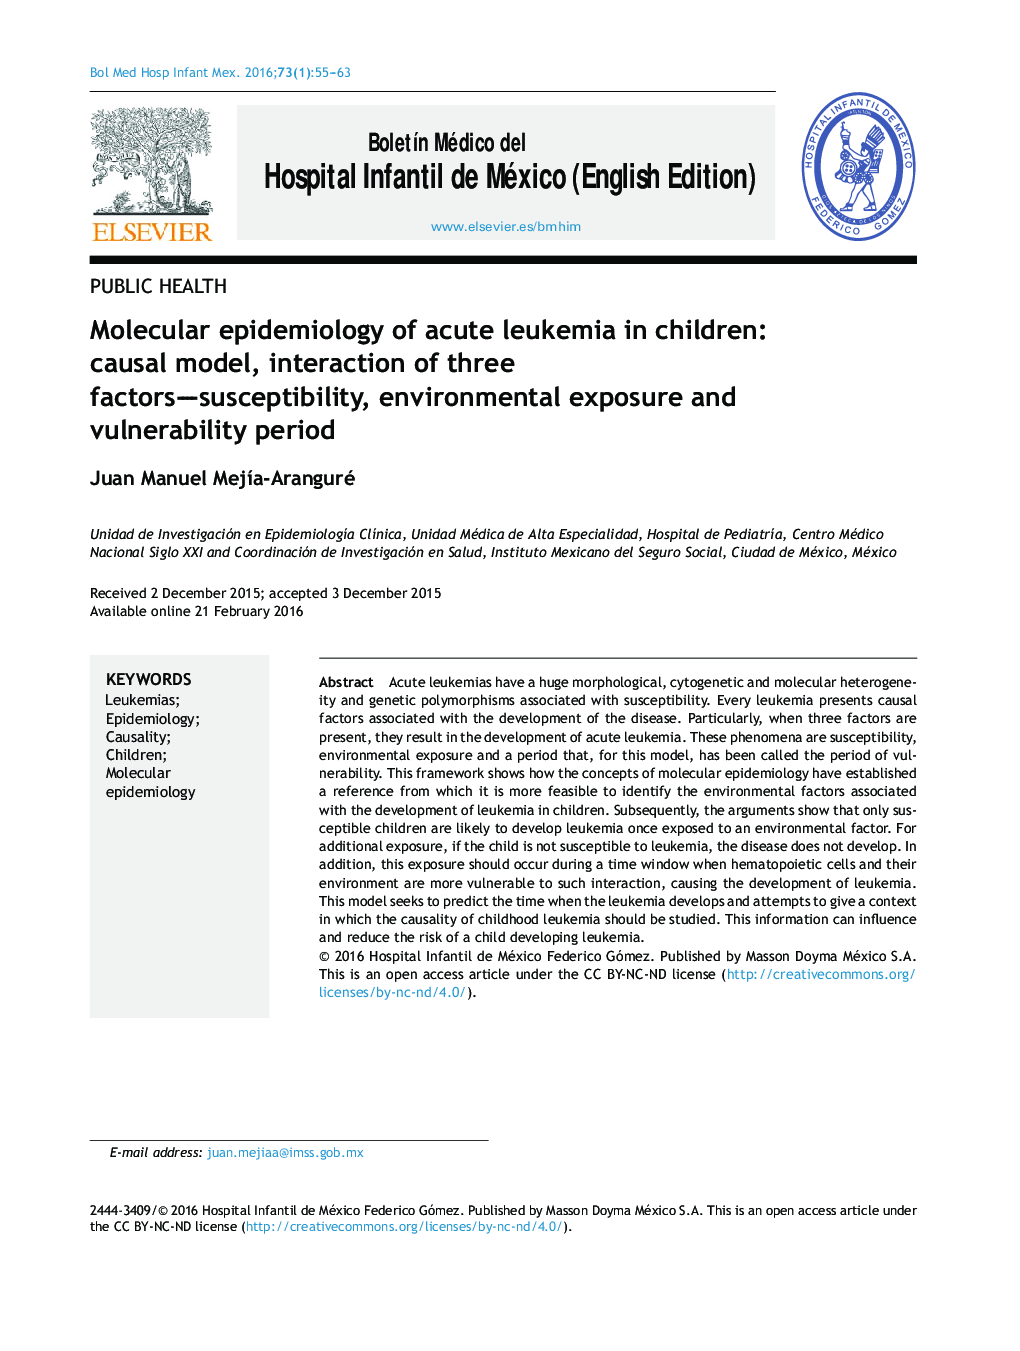 اپیدمیولوژی مولکولی لوسمی حاد در کودکان: مدل علیت، تعامل سه عامل حساس، محیط زیست و دوره آسیب پذیری 